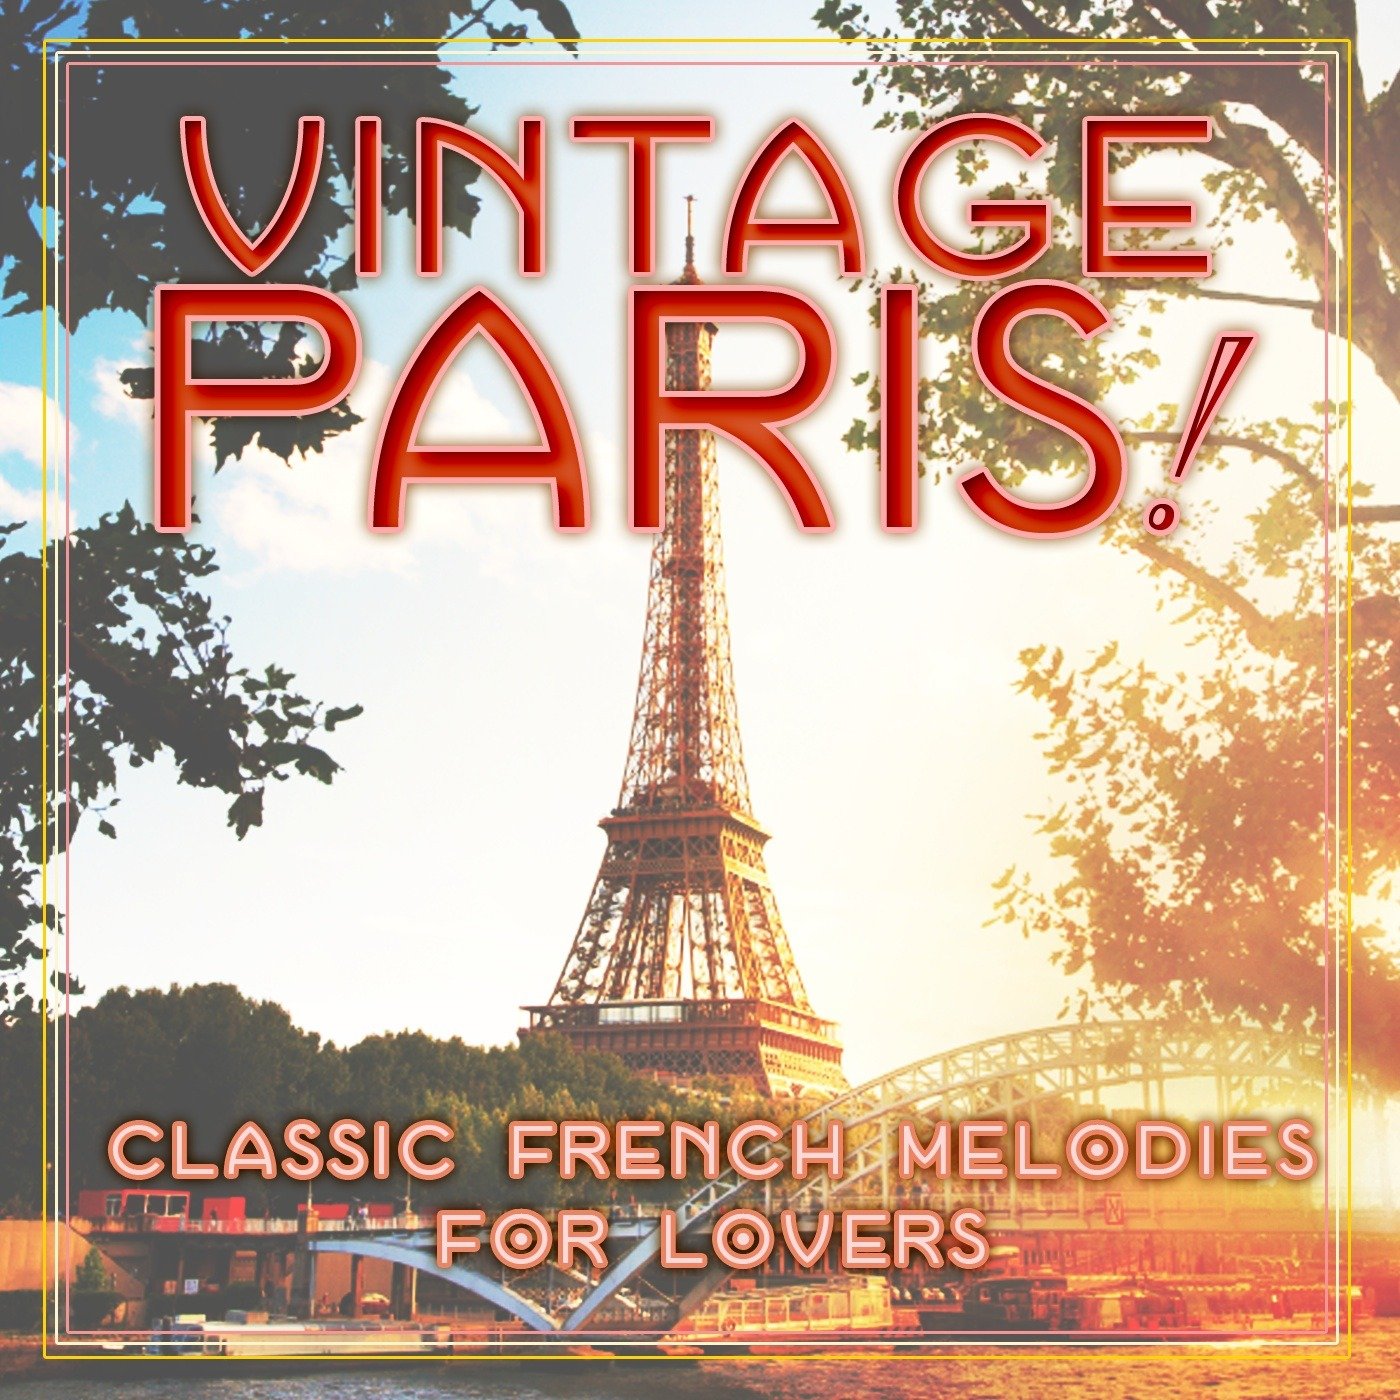 Miss paris песня. Париж Классик. Книги про Париж классика. Песня про Париж на французском. Париж классическая музыка.